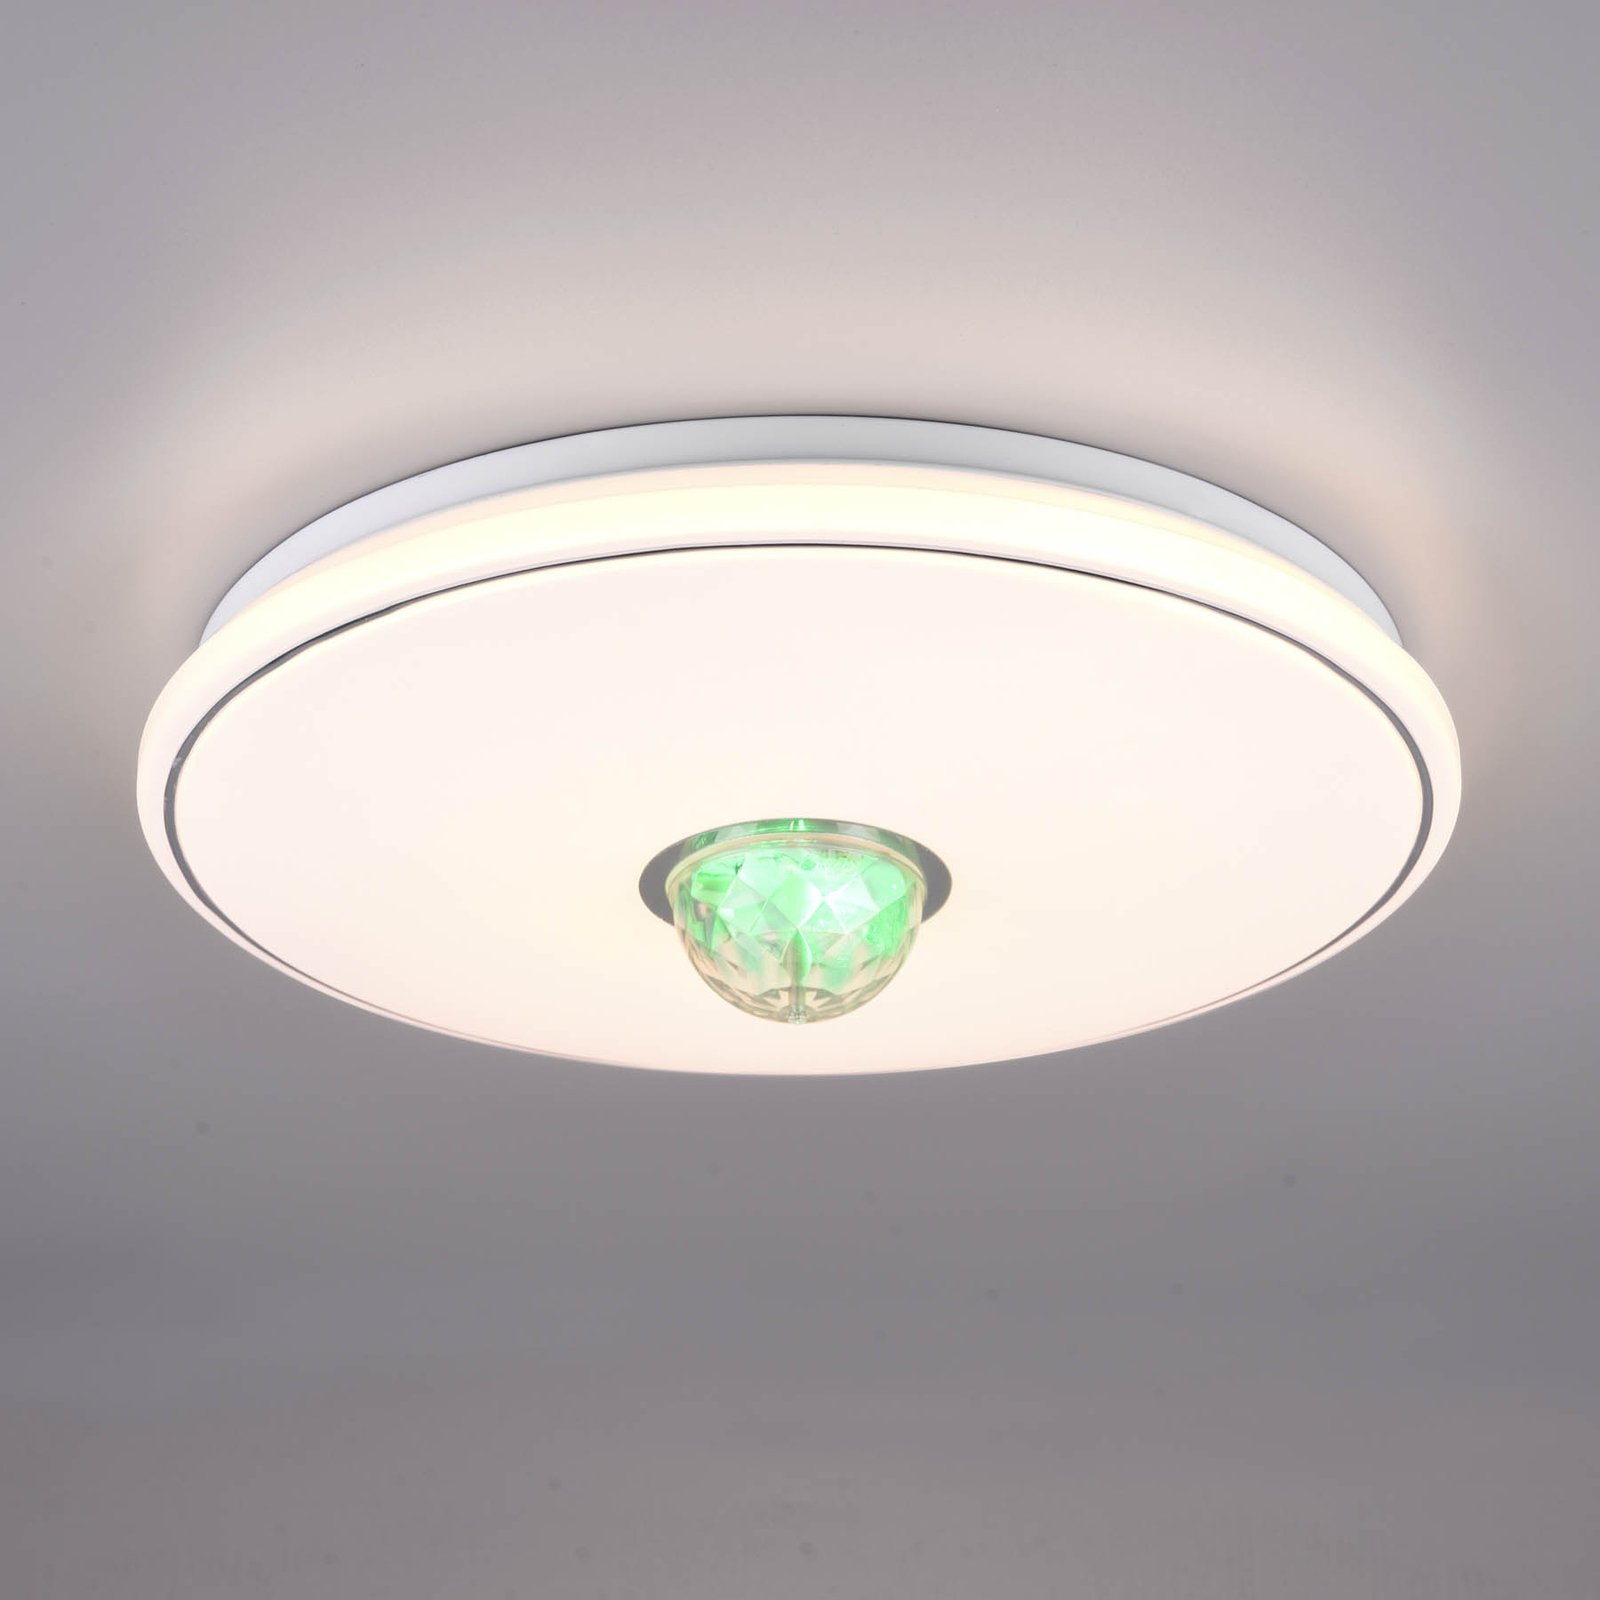 LED lubinis šviestuvas "Rave", nuotolinio valdymo pultas, reguliuojamas